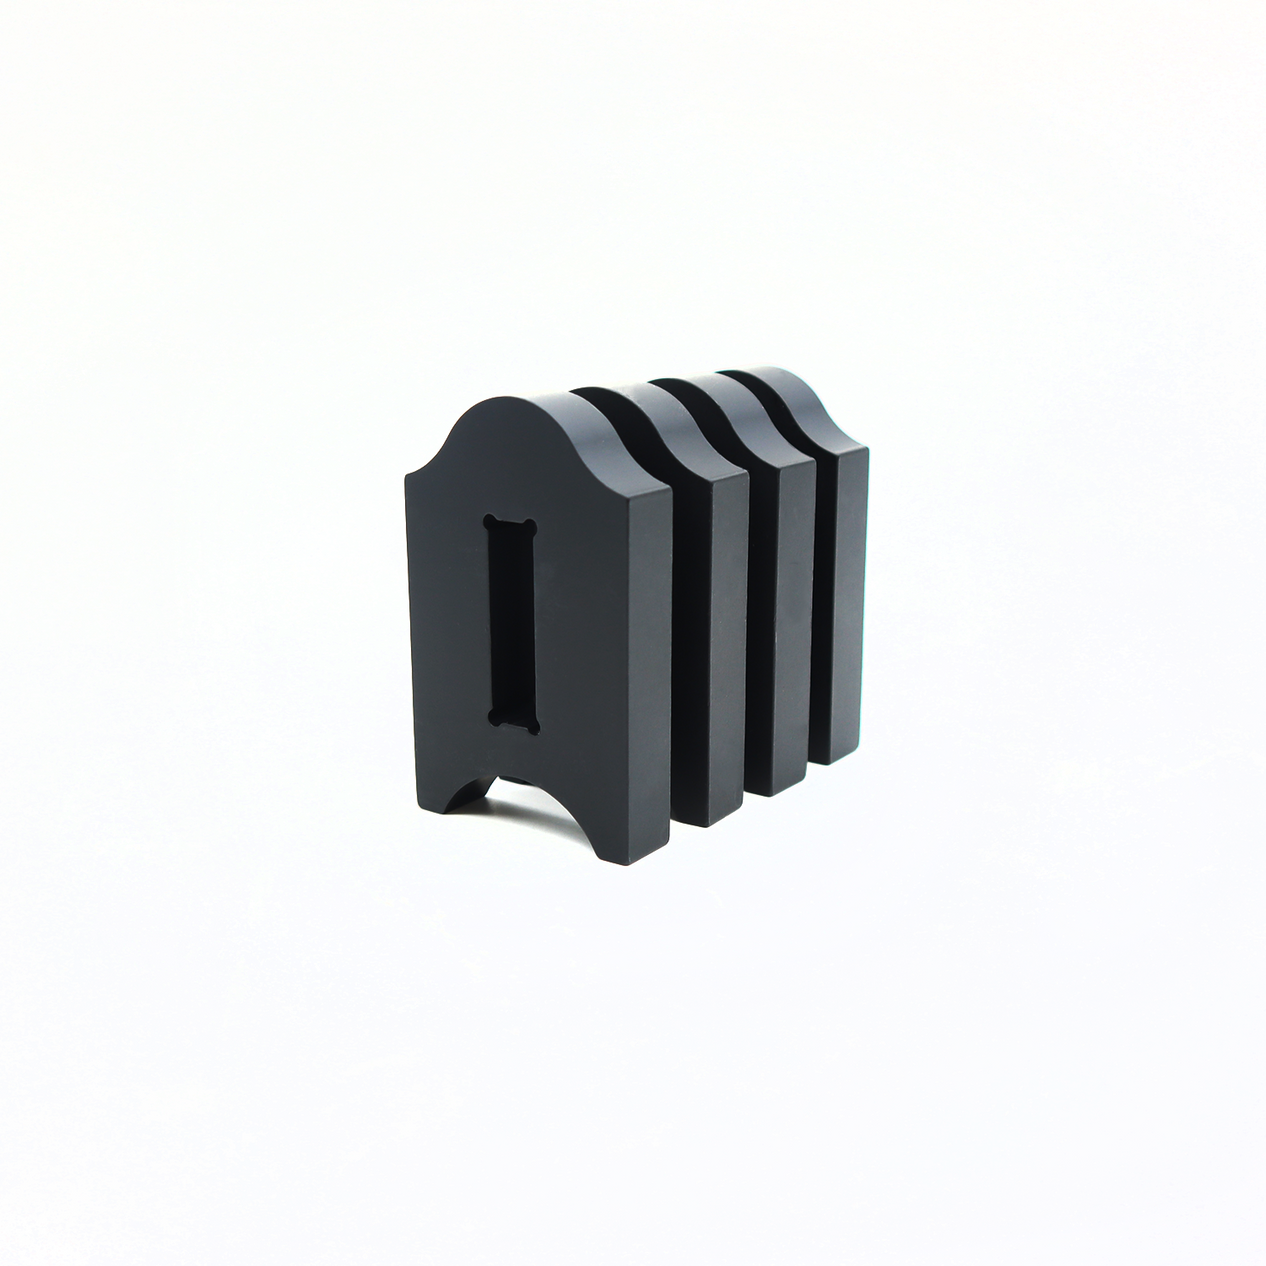 4 Piece Roubo Style Aluminum Black Winding Stick Bracket Kit